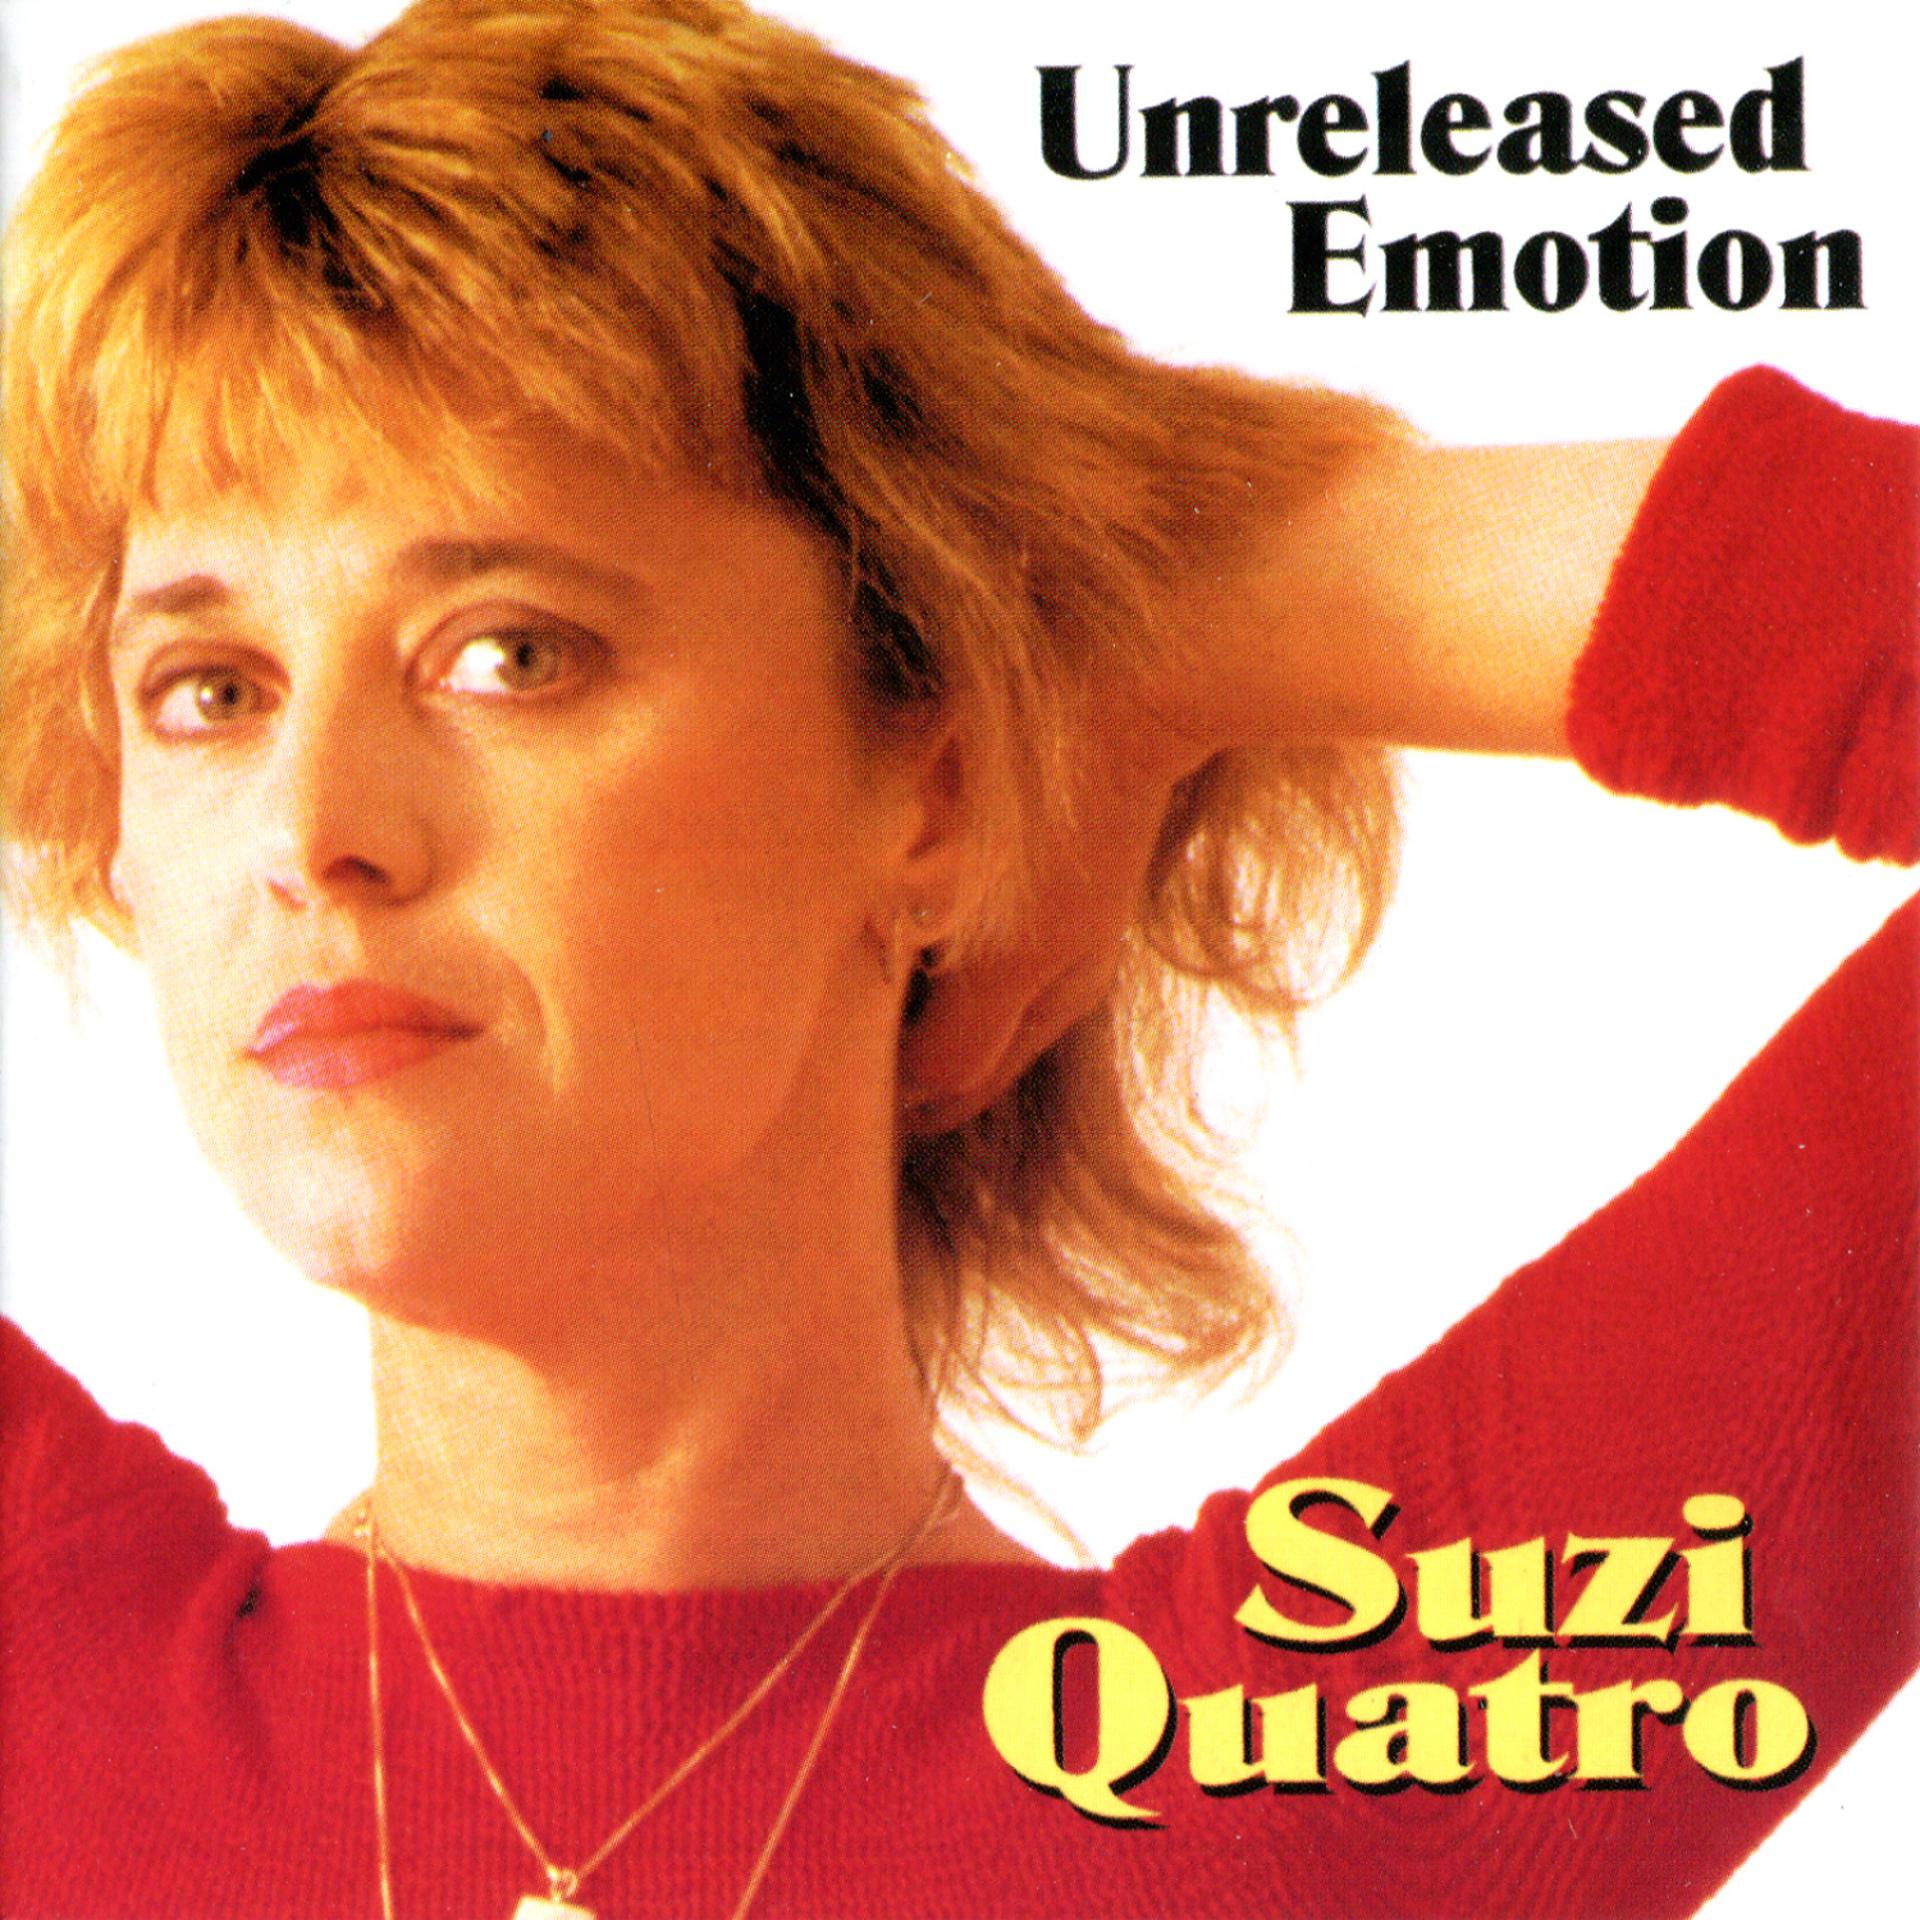 Включи кватро. Suzi quatro 1998 Unreleased emotion. Suzi quatro 1983 Unreleased emotion. Suzi quatro Unreleased emotion. Unreleased emotion Сьюзи кватро.